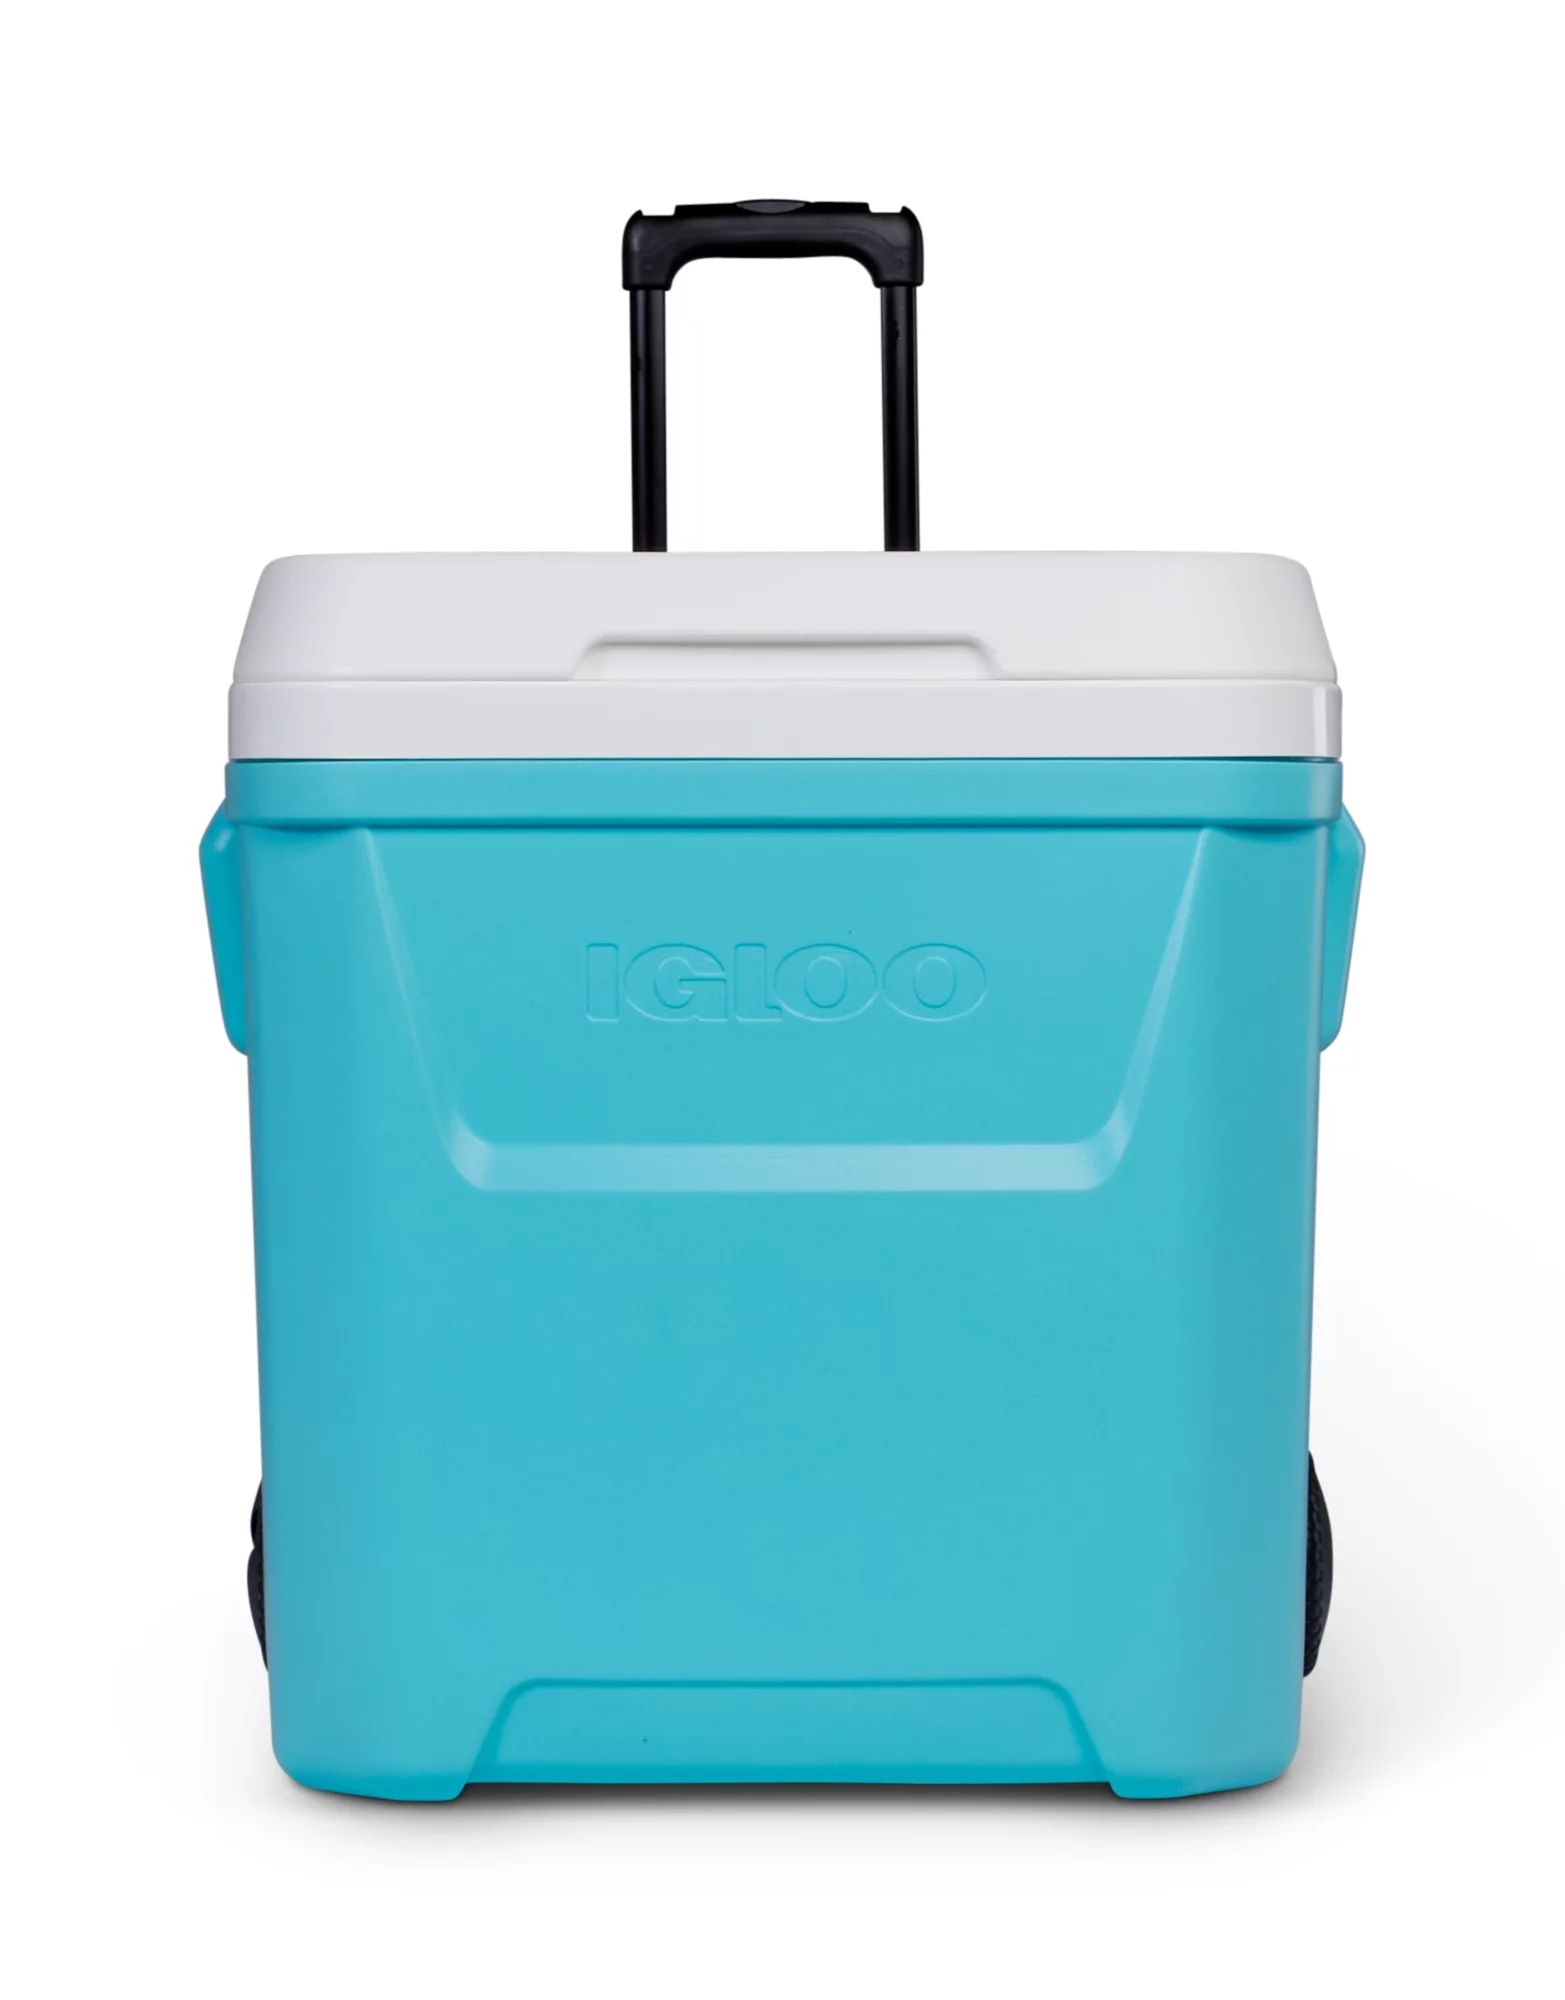 Igloo 60 QT Laguna Hard Sided Rolling Ice Chest Cooler, Aqua (20.20" x 18.61" x 20.75") | Walmart (US)